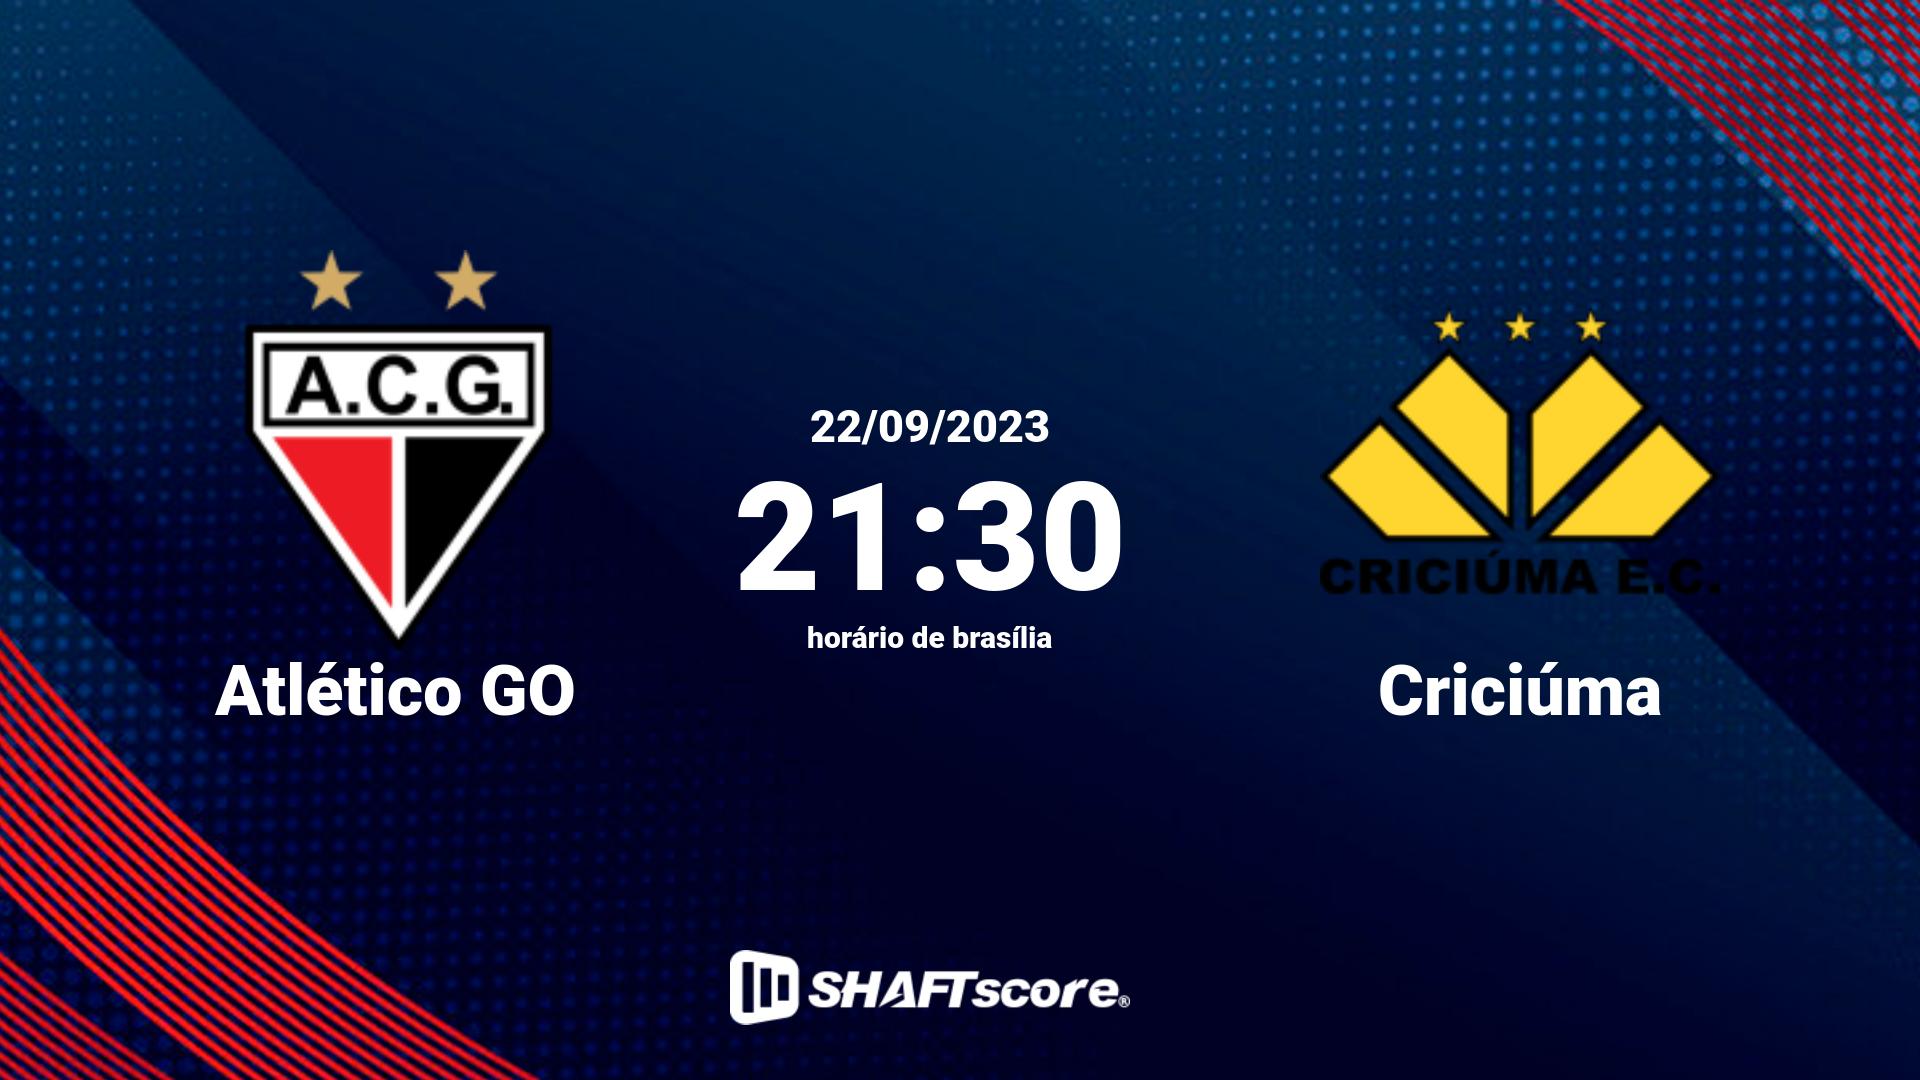 Estatísticas do jogo Atlético GO vs Criciúma 22.09 21:30